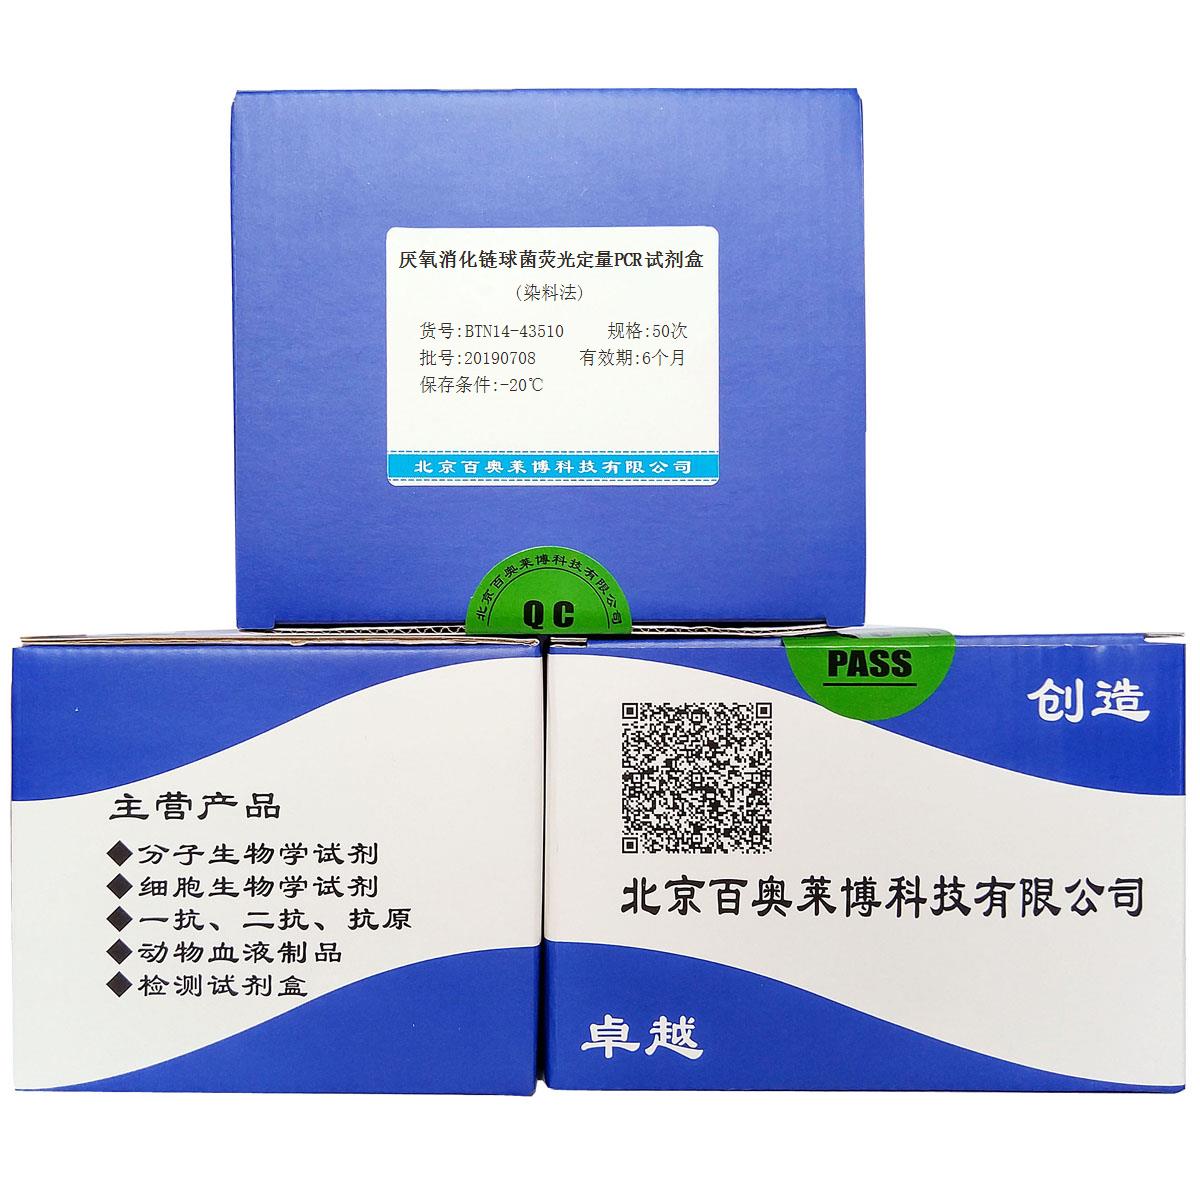 厌氧消化链球菌荧光定量PCR试剂盒(染料法)